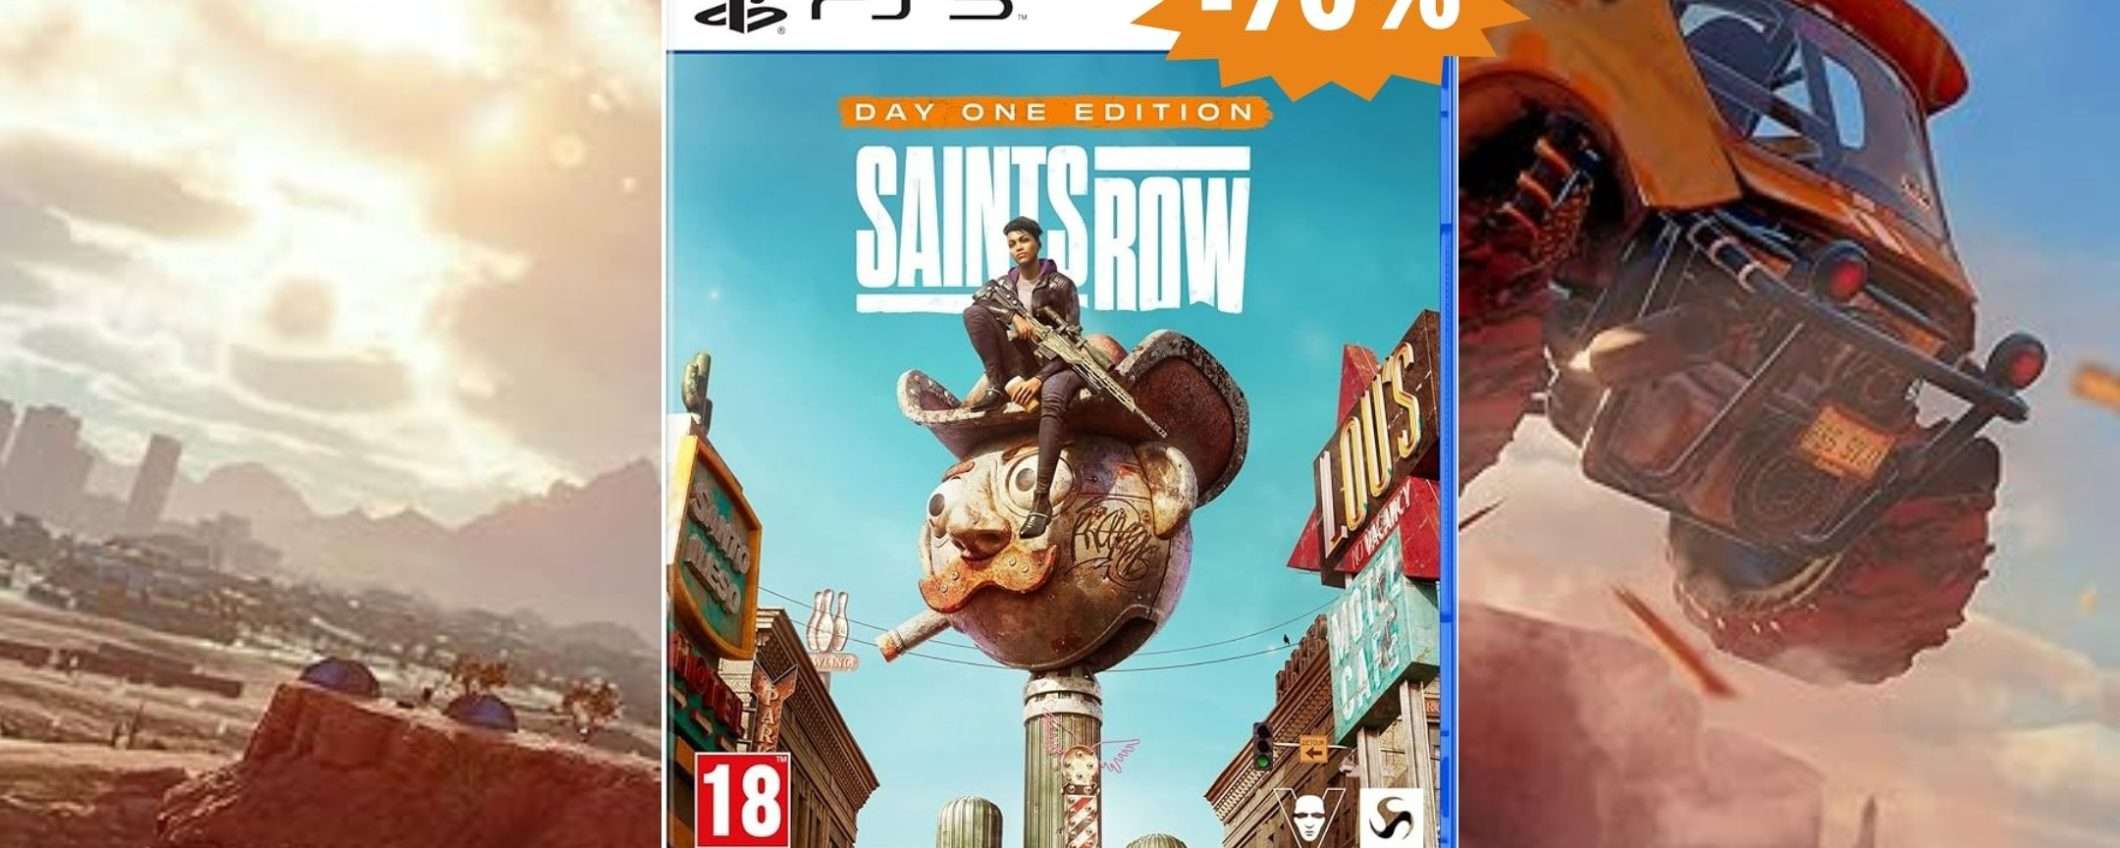 Saints Row per PS5: CROLLO del prezzo su Amazon (-70%)